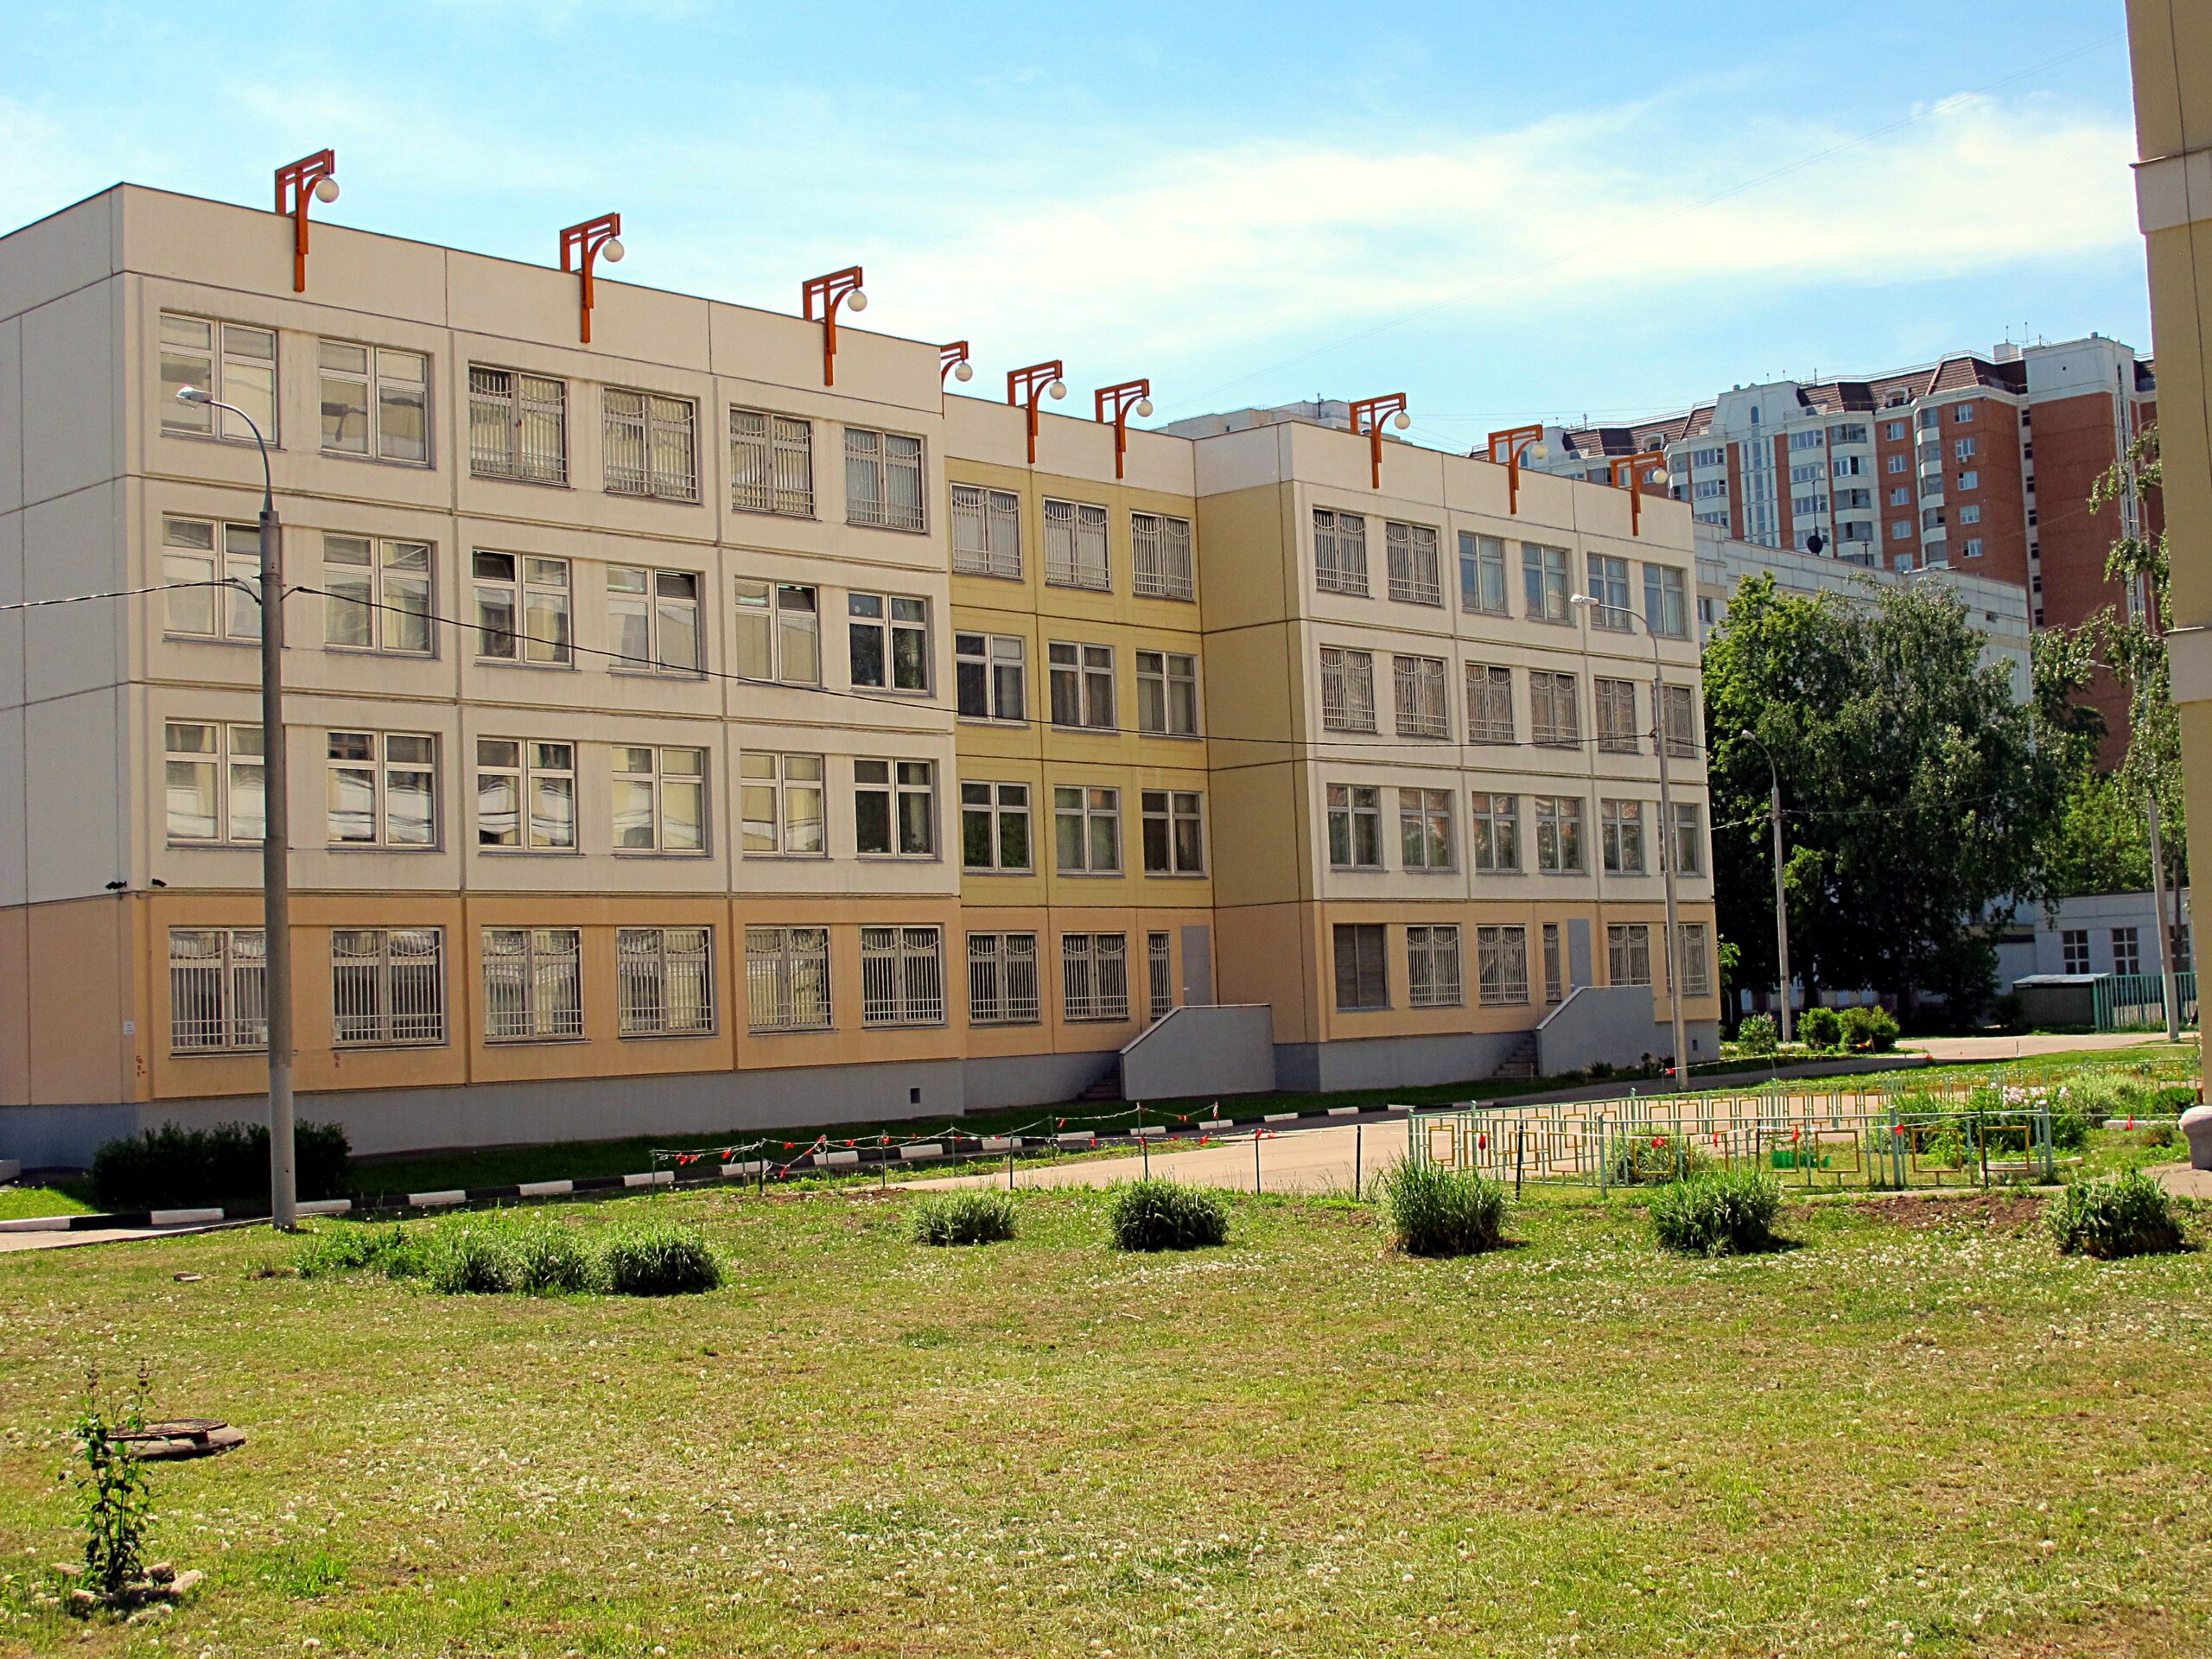 صورة مدرسة كبيرة أمامها حديقة